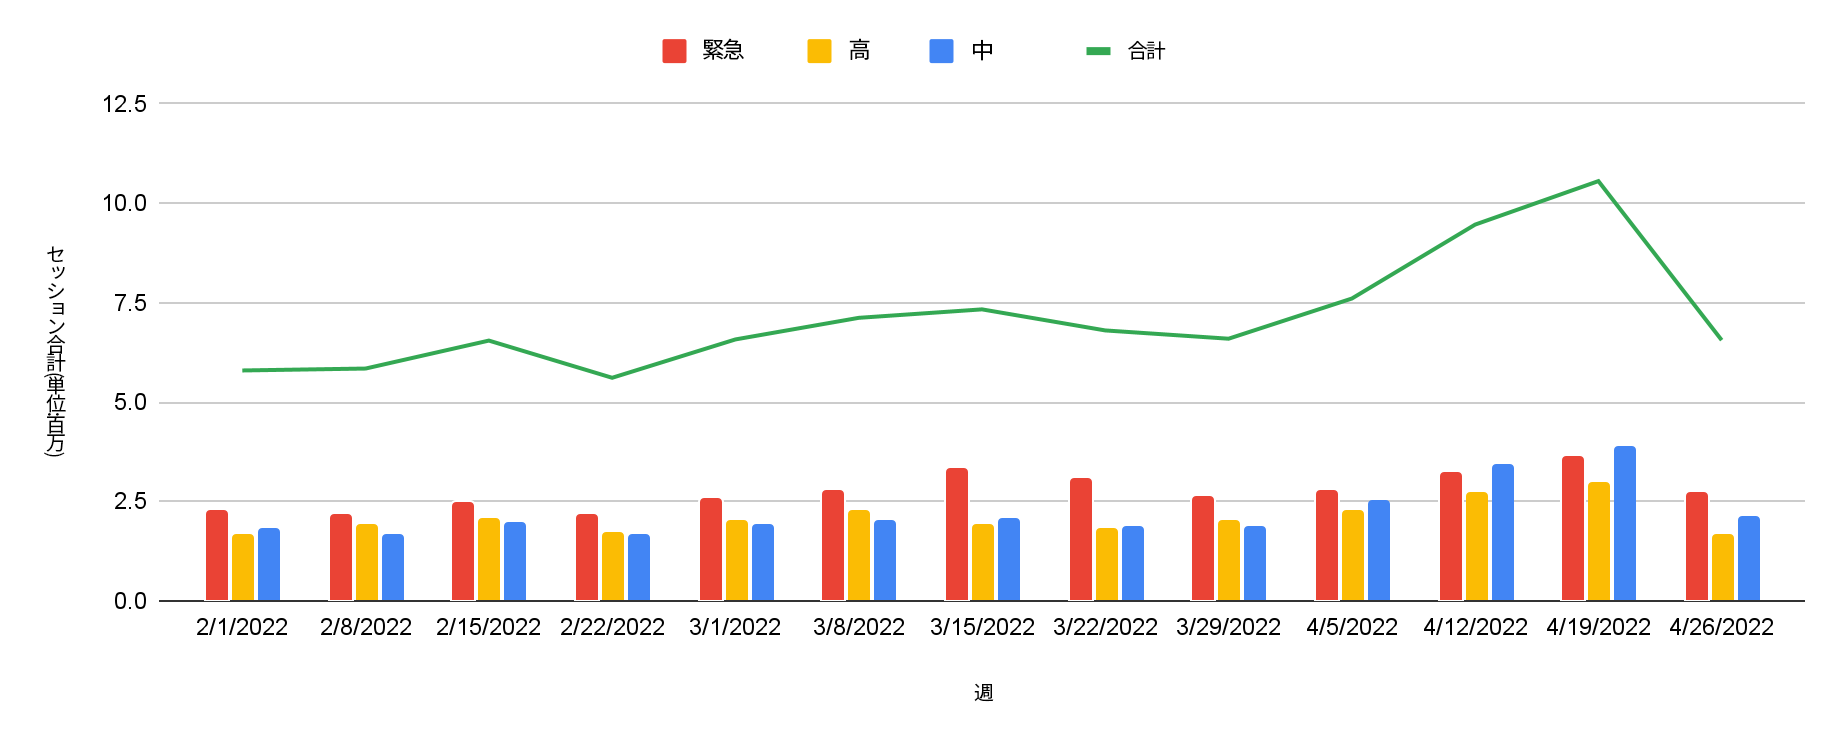 ここでは赤が「緊急」、黄が「高」、青が「中程度」、緑が「合計」を表しています。この棒グラフは、2022年2月から4月の週ごと(単位:百万)のセッションの攻撃深刻度分布を示しています。 